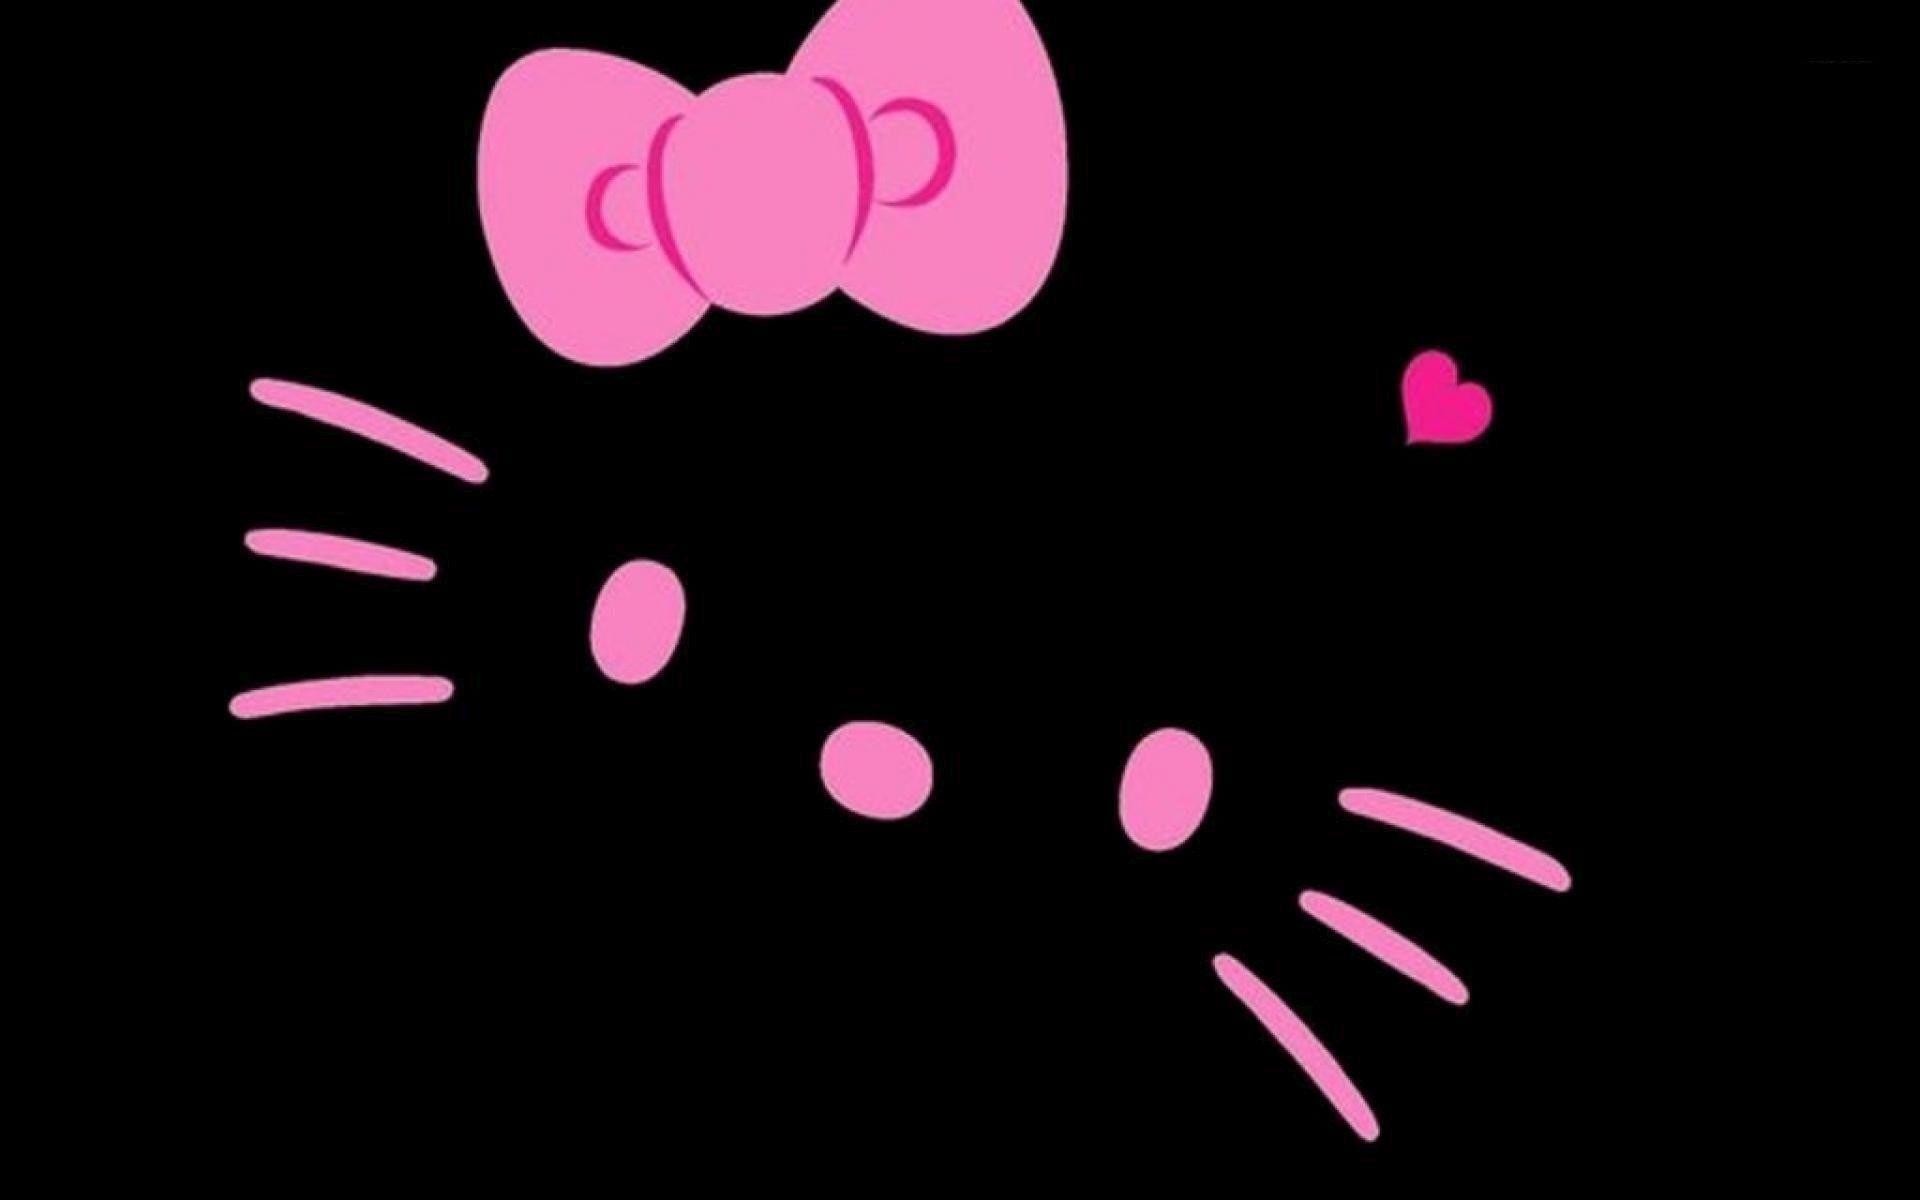 Hộp đen trang trí Hello Kitty là một lựa chọn tuyệt vời để có một không gian làm việc tràn đầy niềm vui và năng lượng tích cực. Bạn sẽ cảm thấy vô cùng thích thú khi nhìn thấy Hello Kitty xinh xắn trên nền đen đậm này.